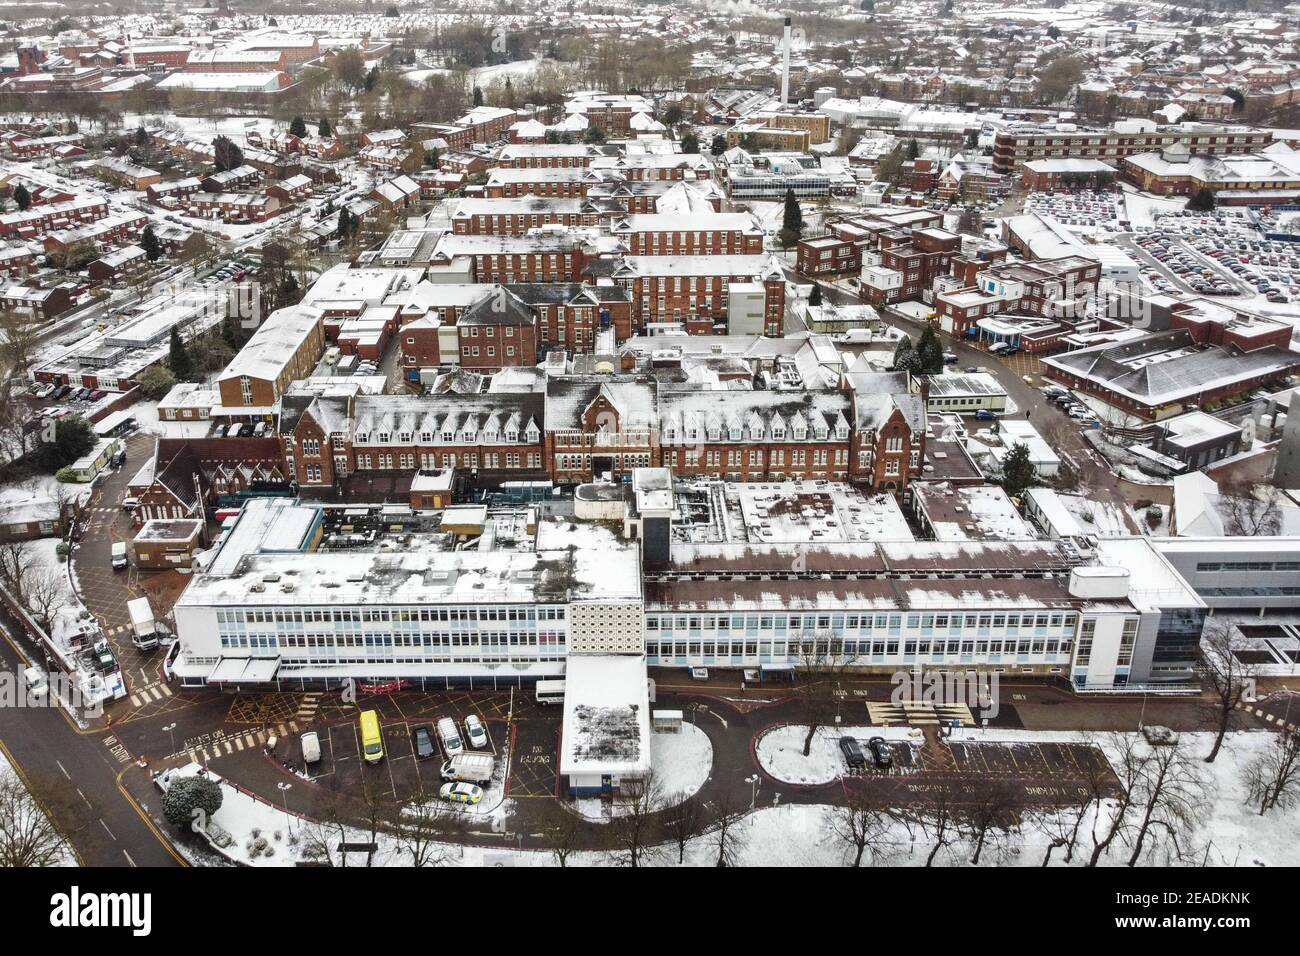 Birmingham, West Midlands, Großbritannien. Februar 2021, 9th. Das City Hospital in Birmingham wurde von Schnee bedeckt, während Storm Darcy seine winterliche Explosion aus dem Osten fortsetzt. PIC nach Kredit: Sam Holiday/Alamy Live Nachrichten Stockfoto